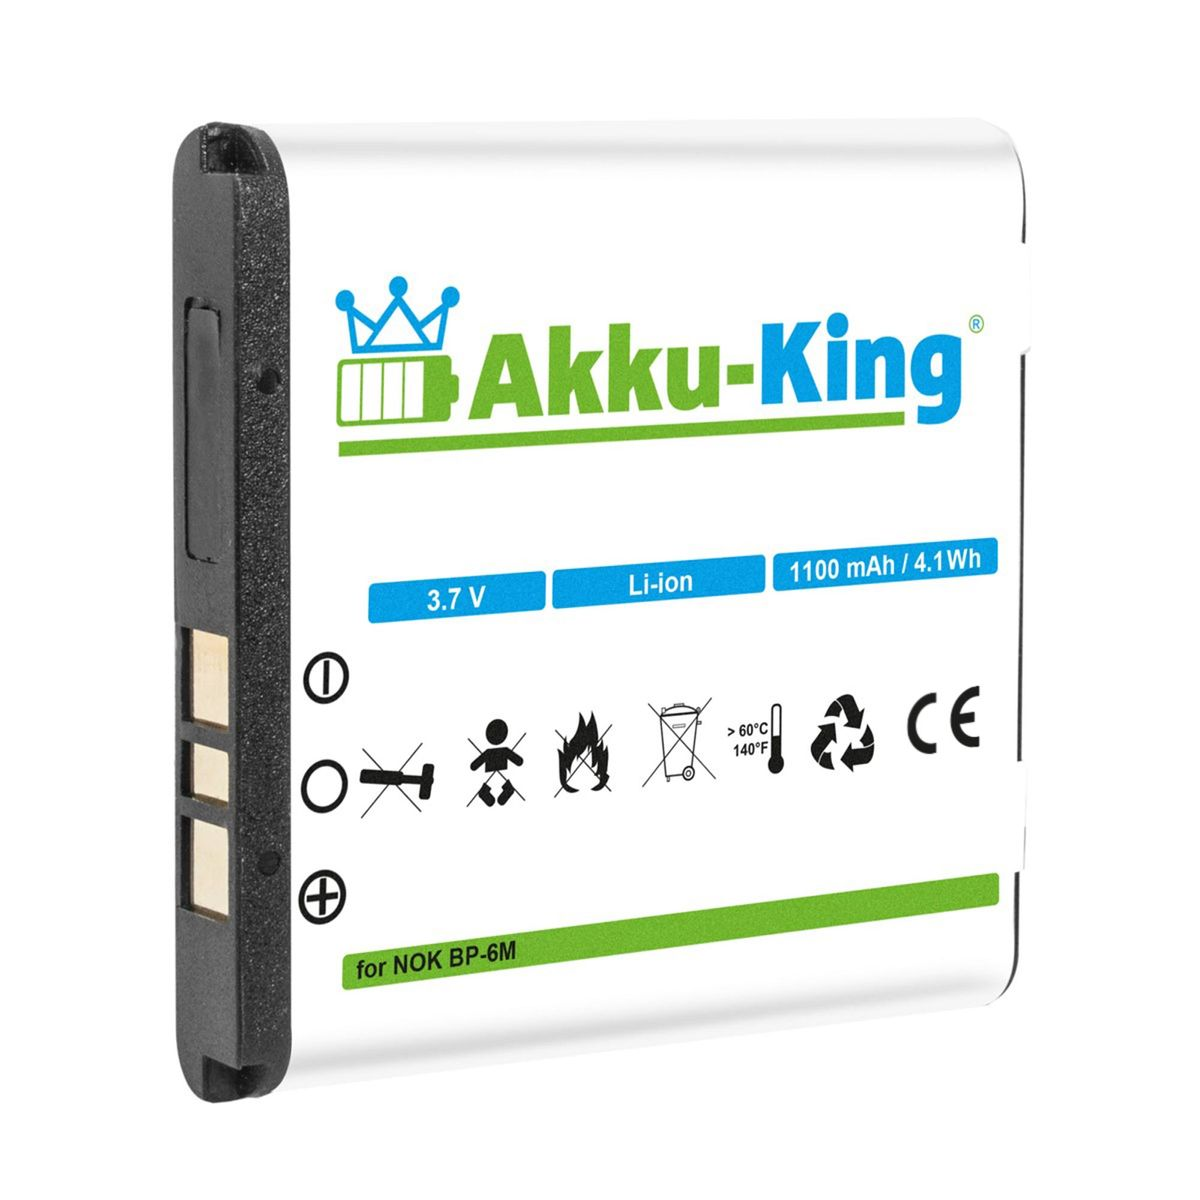 Nokia Akku AKKU-KING 3.7 mit 1100mAh kompatibel Volt, Li-Ion Handy-Akku, BP-6M